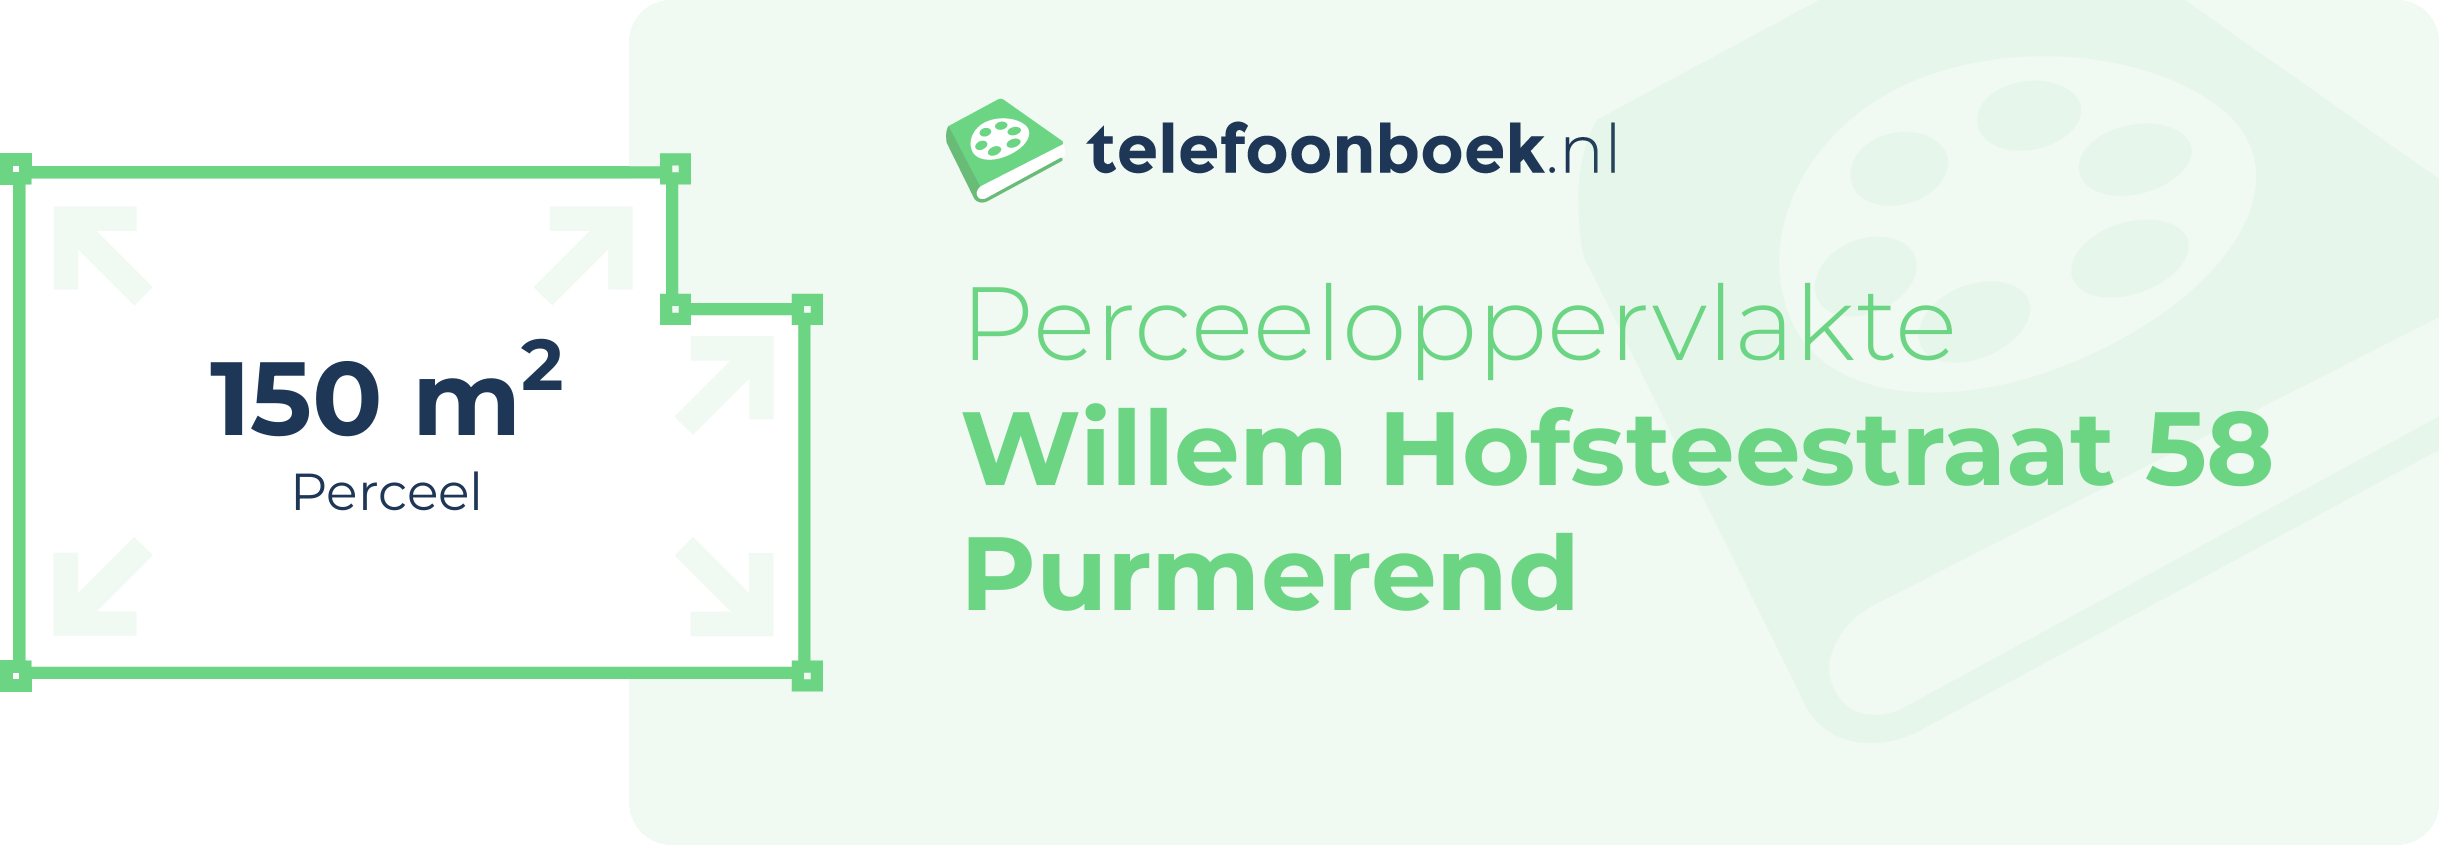 Perceeloppervlakte Willem Hofsteestraat 58 Purmerend